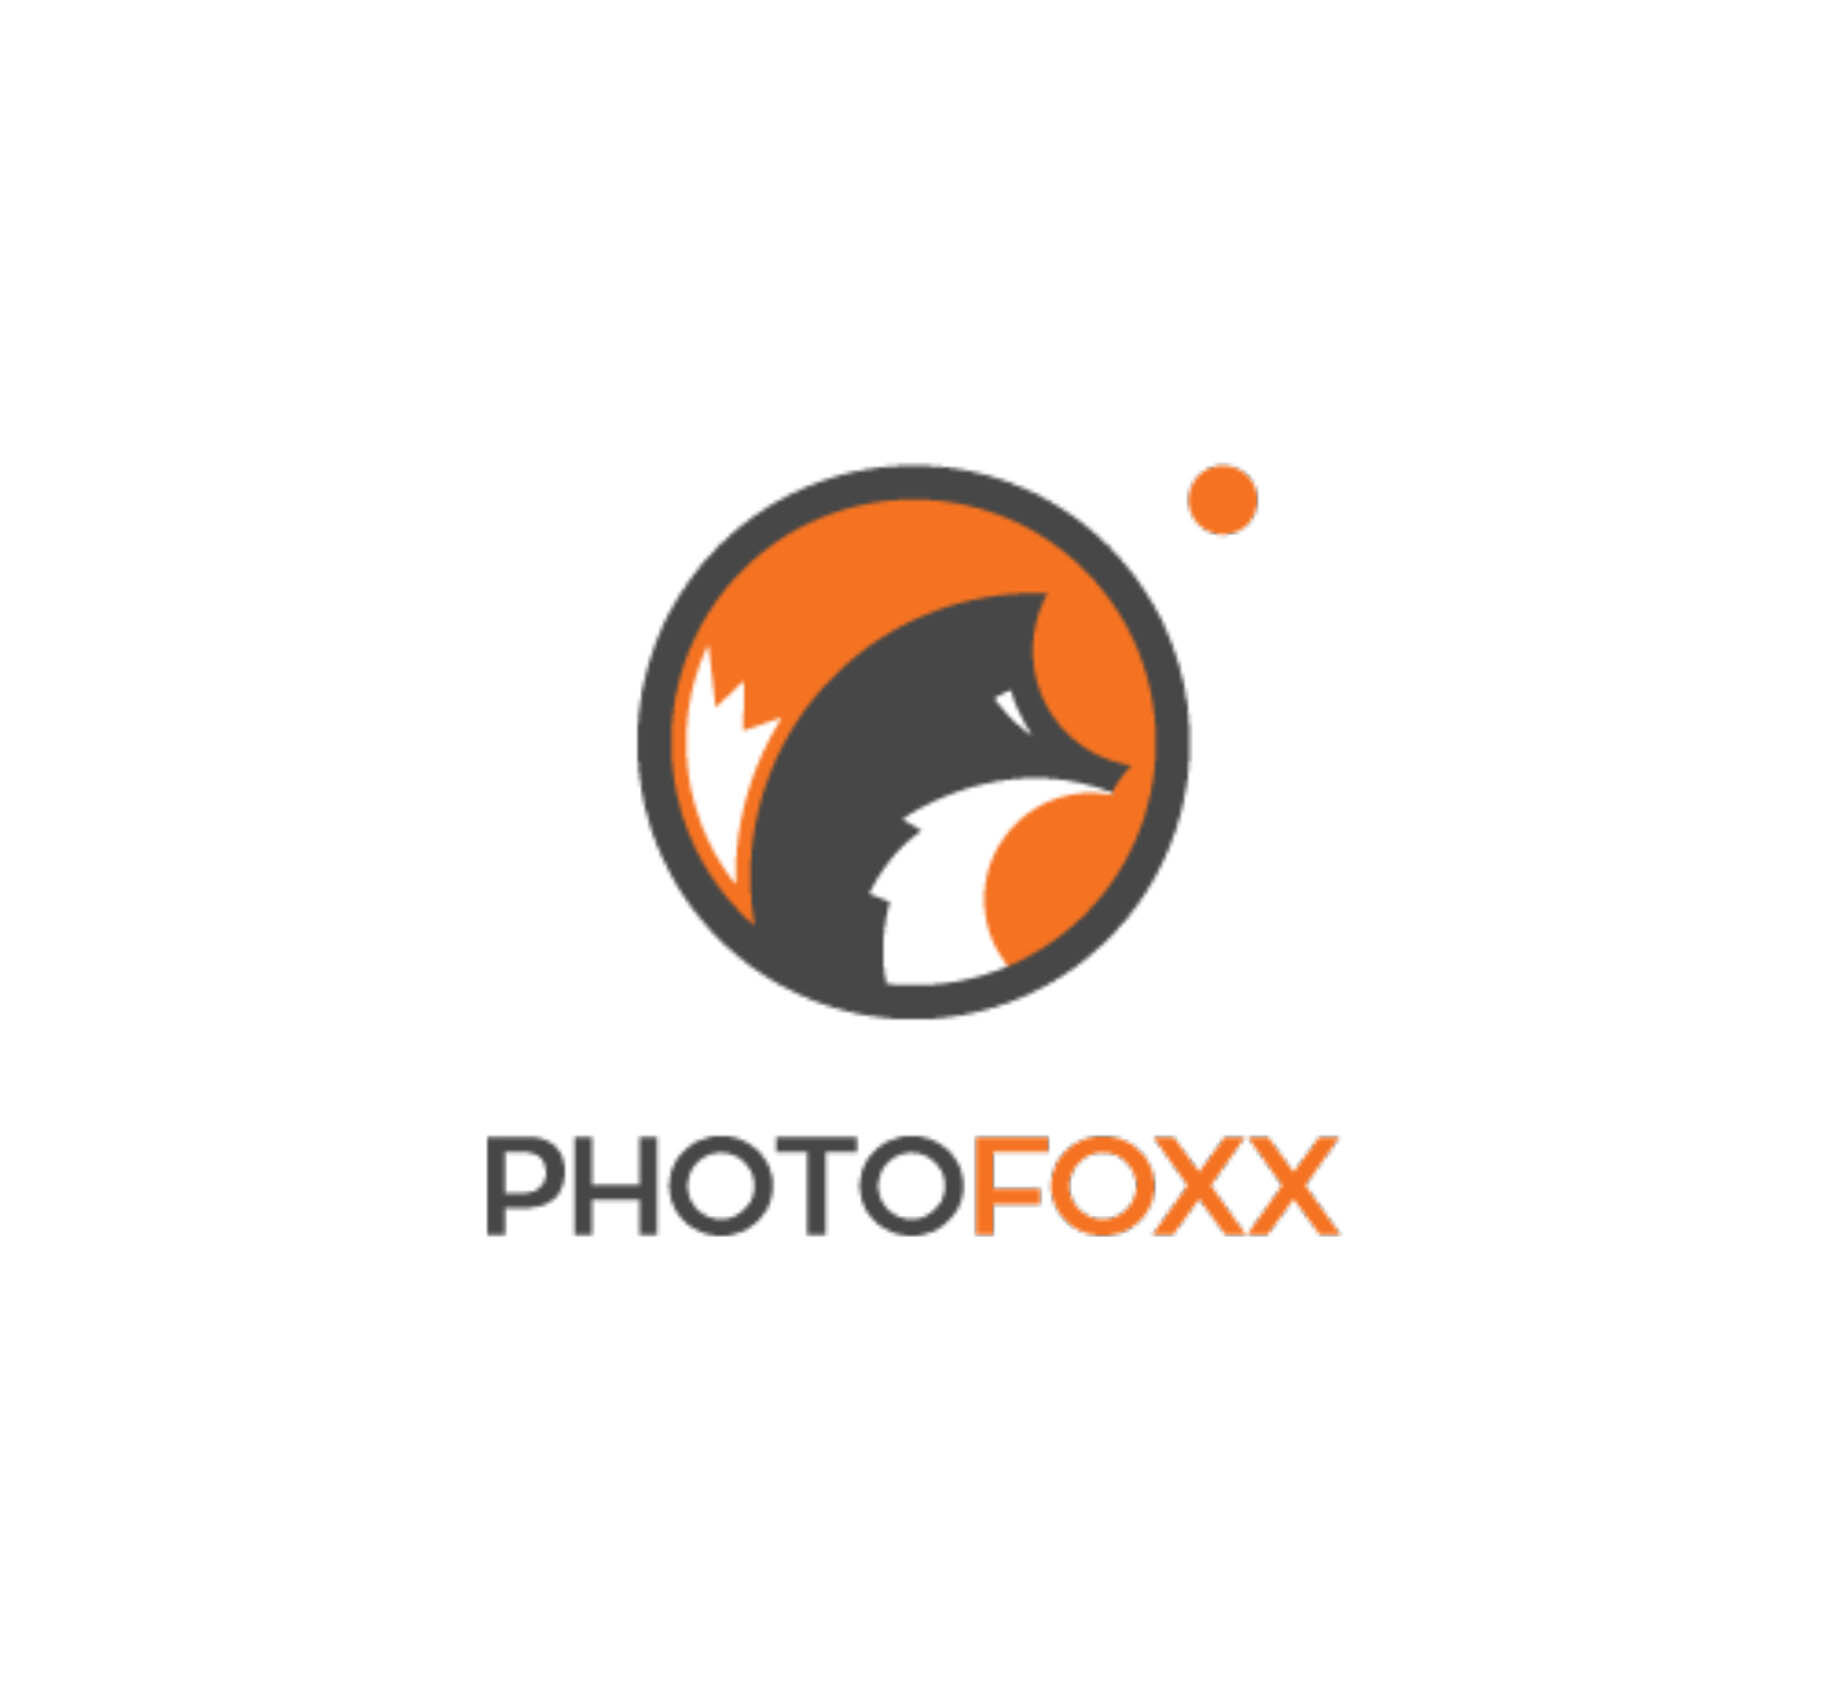 photofoxx-logo.jpg